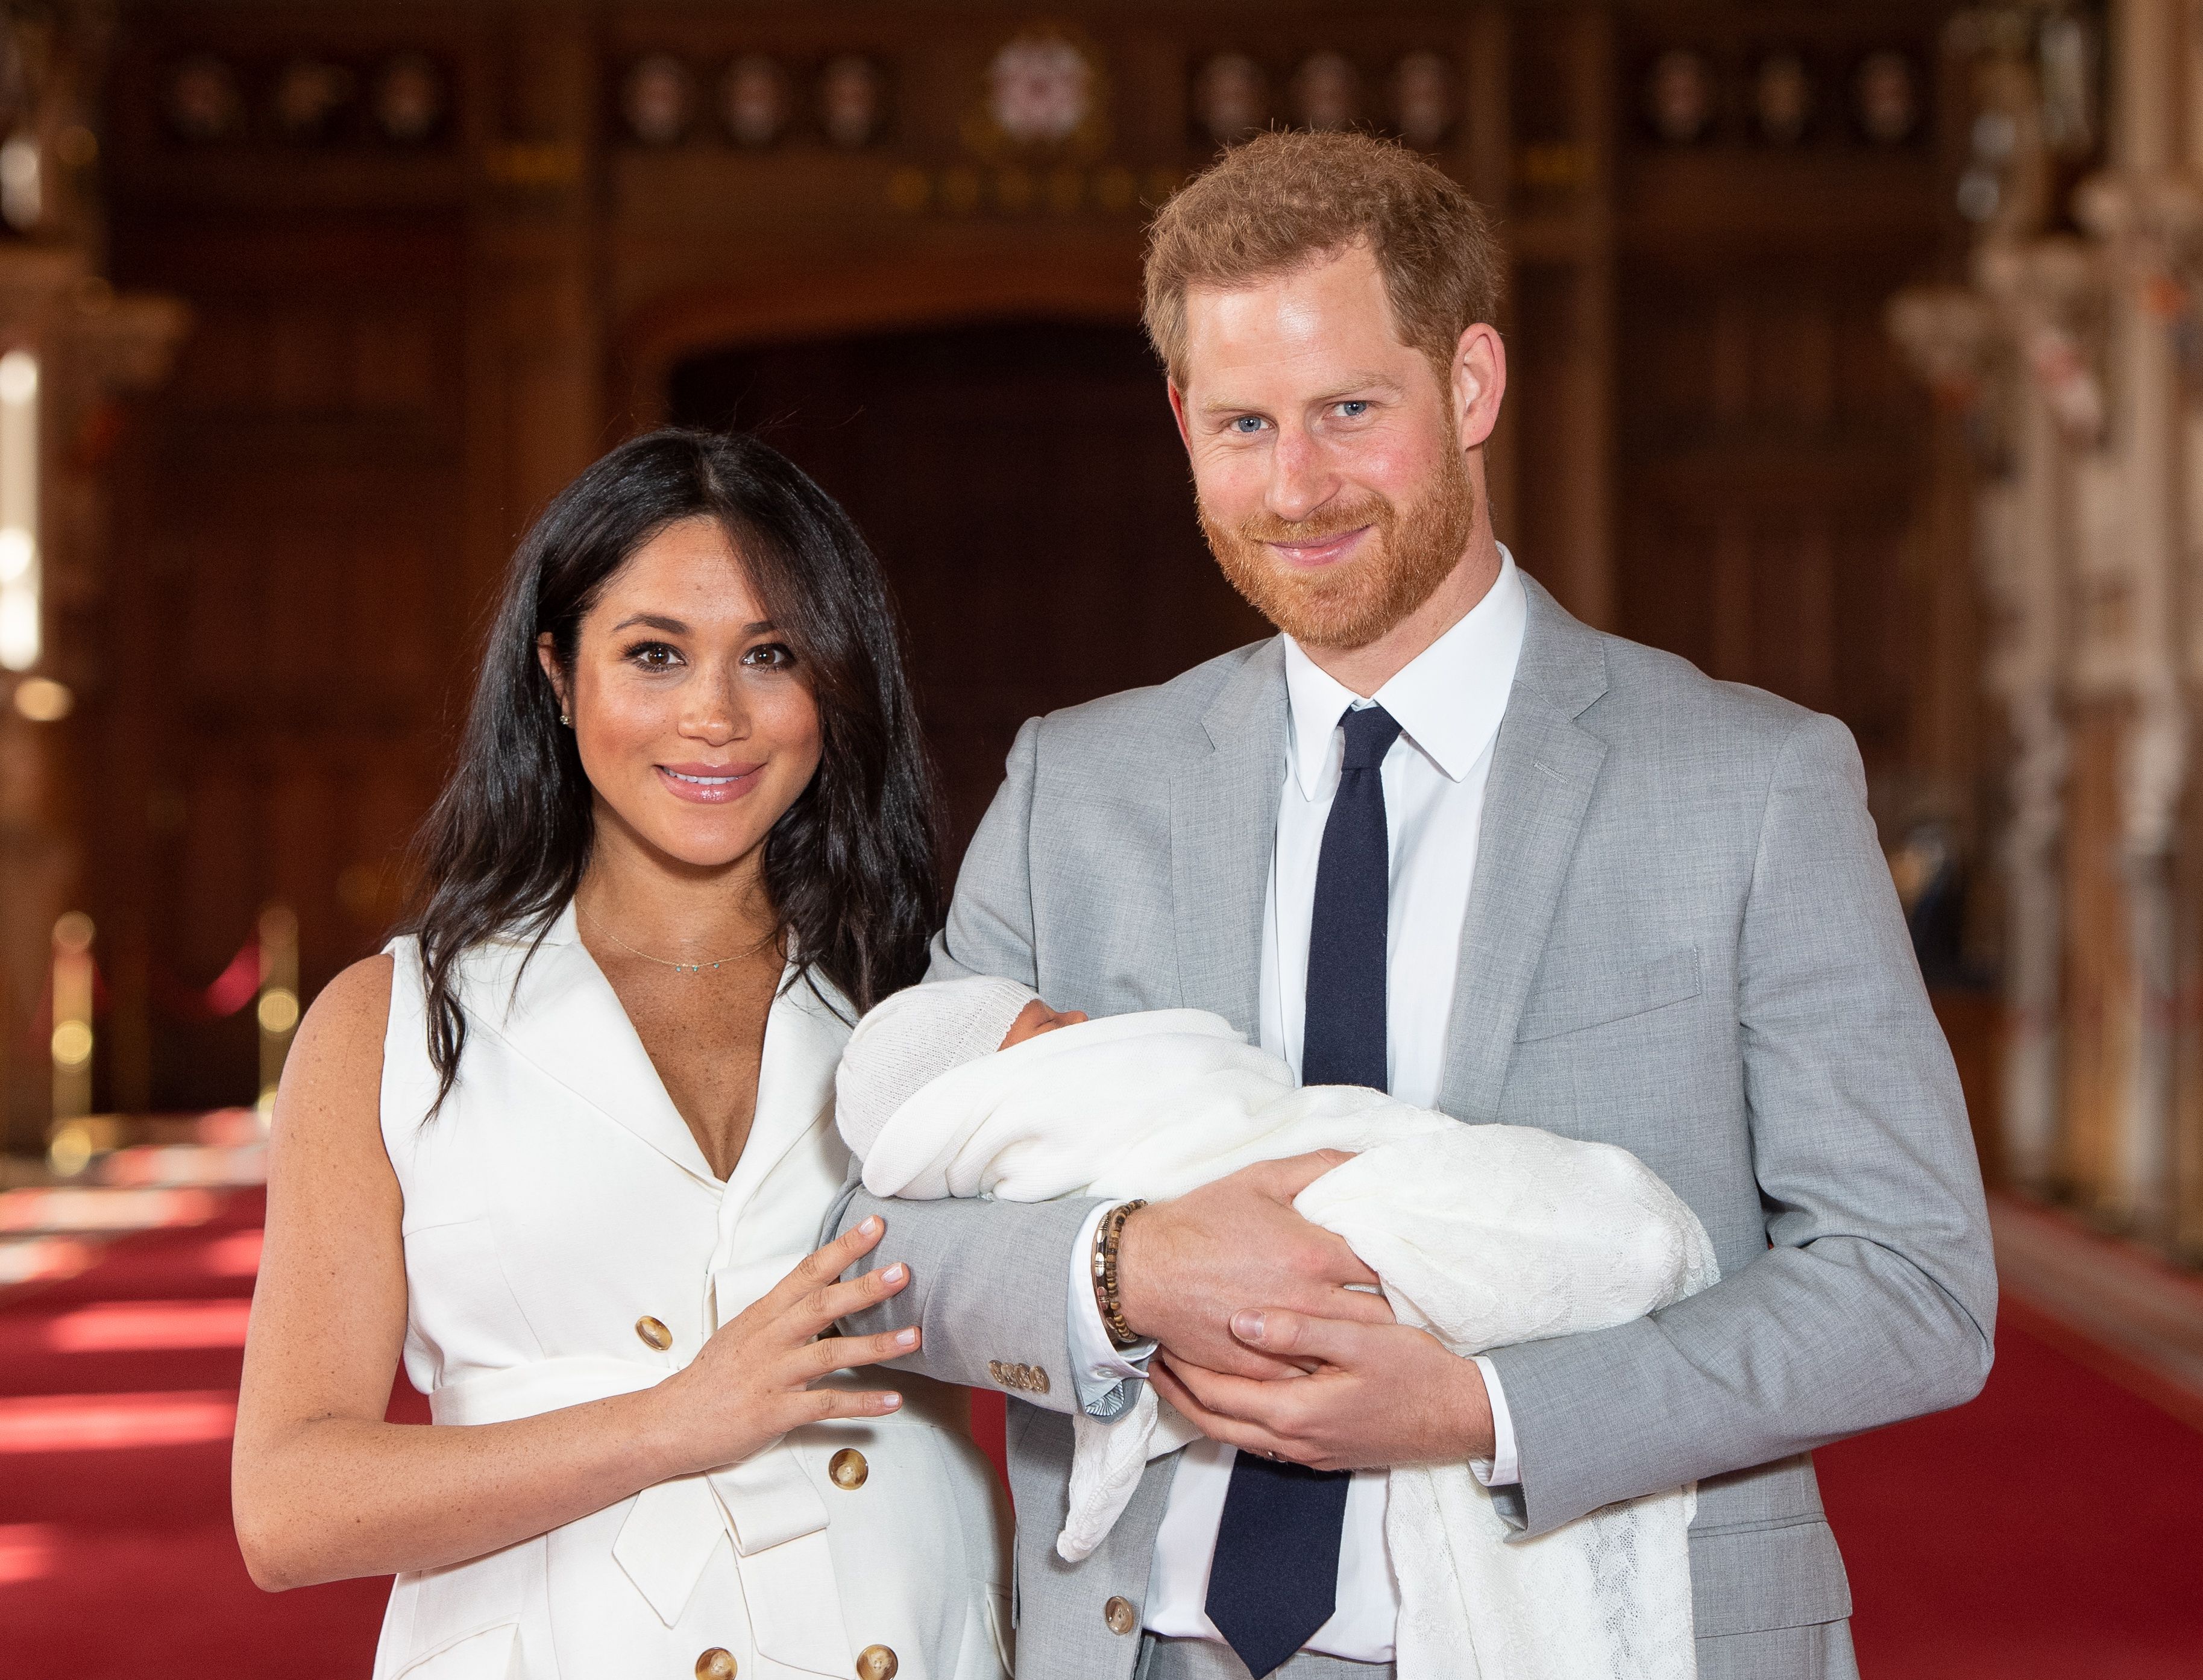 Le prince Harry et Meghan Markle posent avec leur fils nouveau-né Archie Harrison Mountbatten-Windsor dans le St George's Hall du château de Windsor, le 8 mai 2019 à Windsor, en Angleterre. | Source : Getty Images